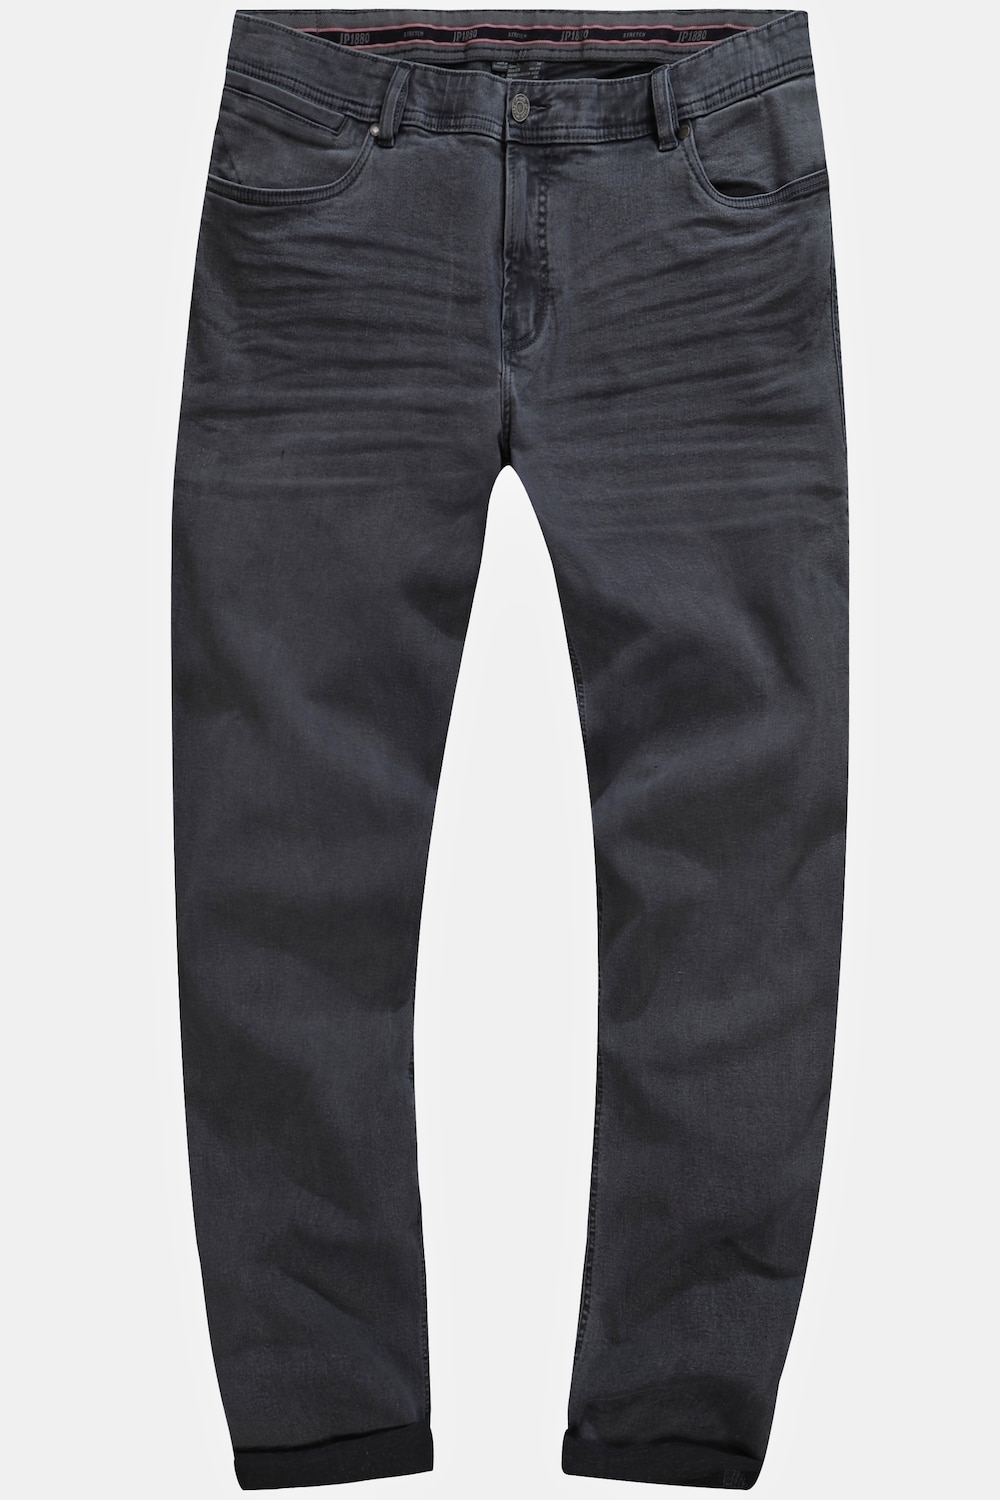 Grote Maten Jeans, Heren, grijs, Maat: 70, Katoen, JP1880